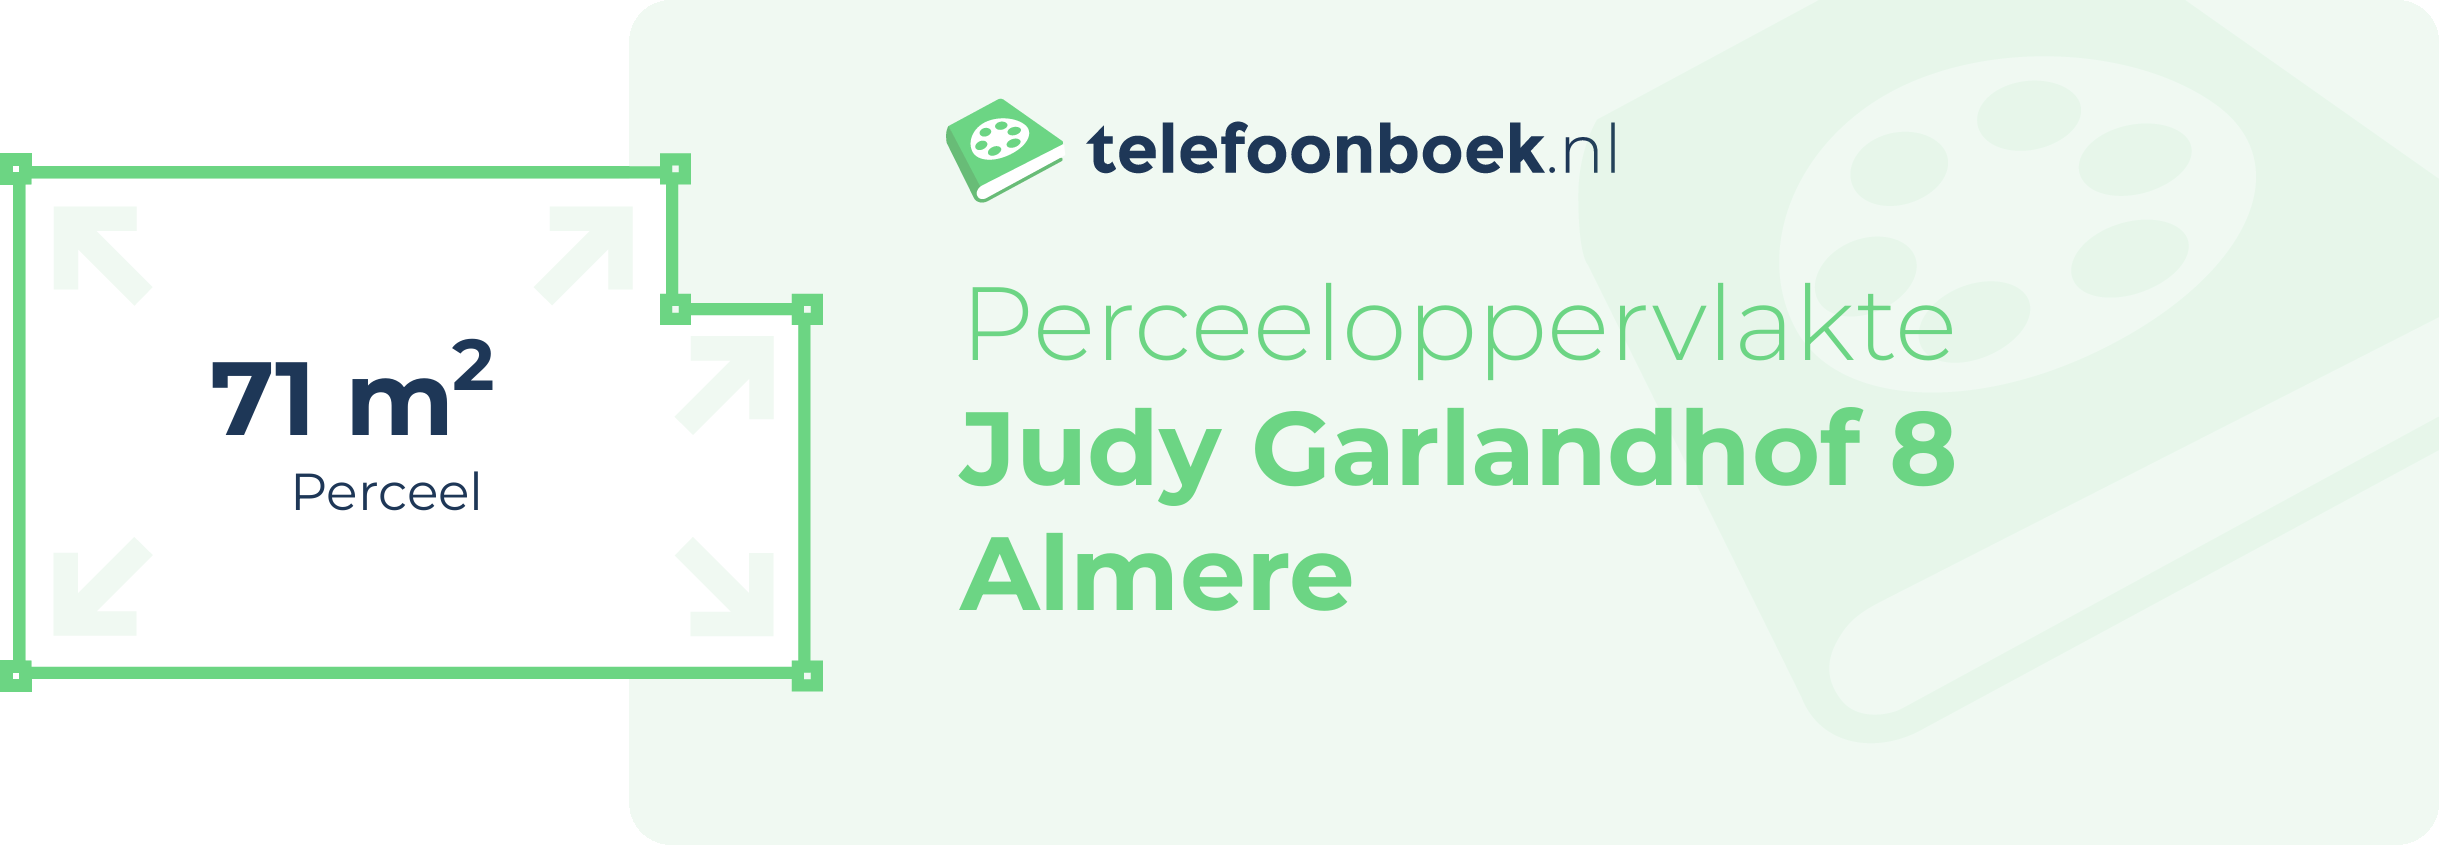 Perceeloppervlakte Judy Garlandhof 8 Almere